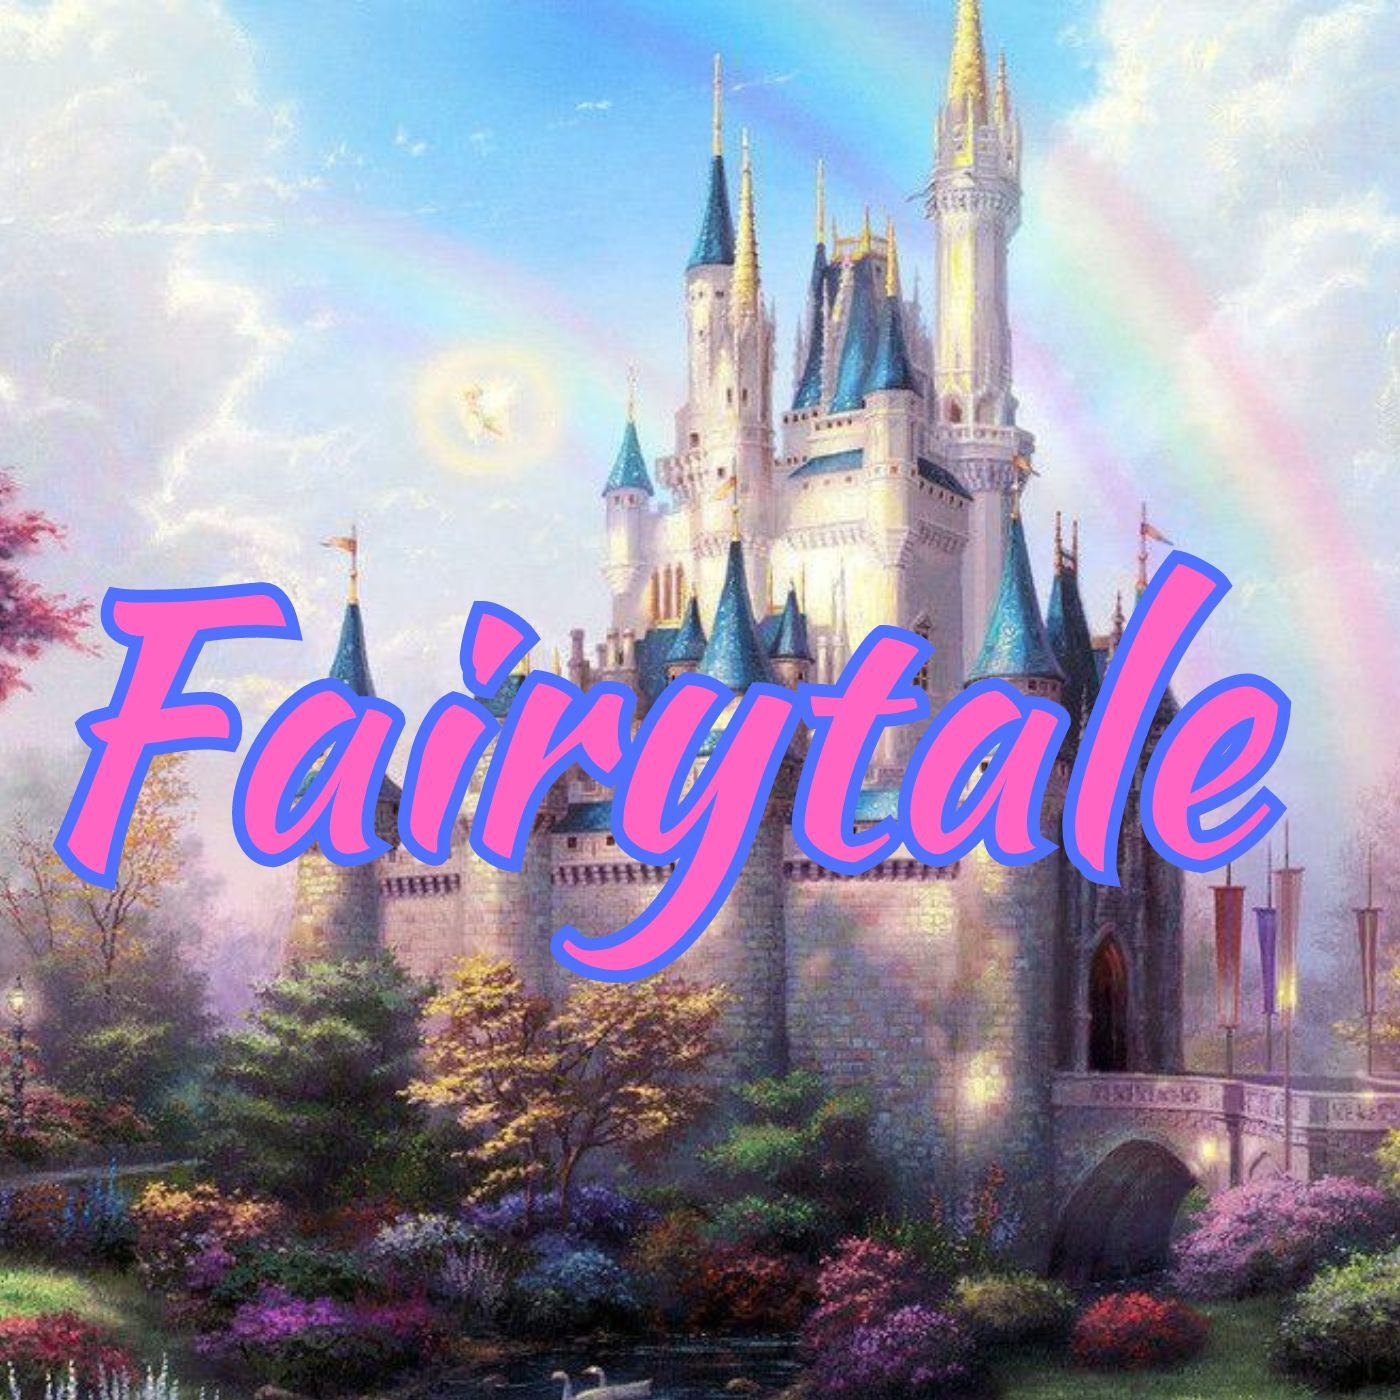 Fairytale.jpeg